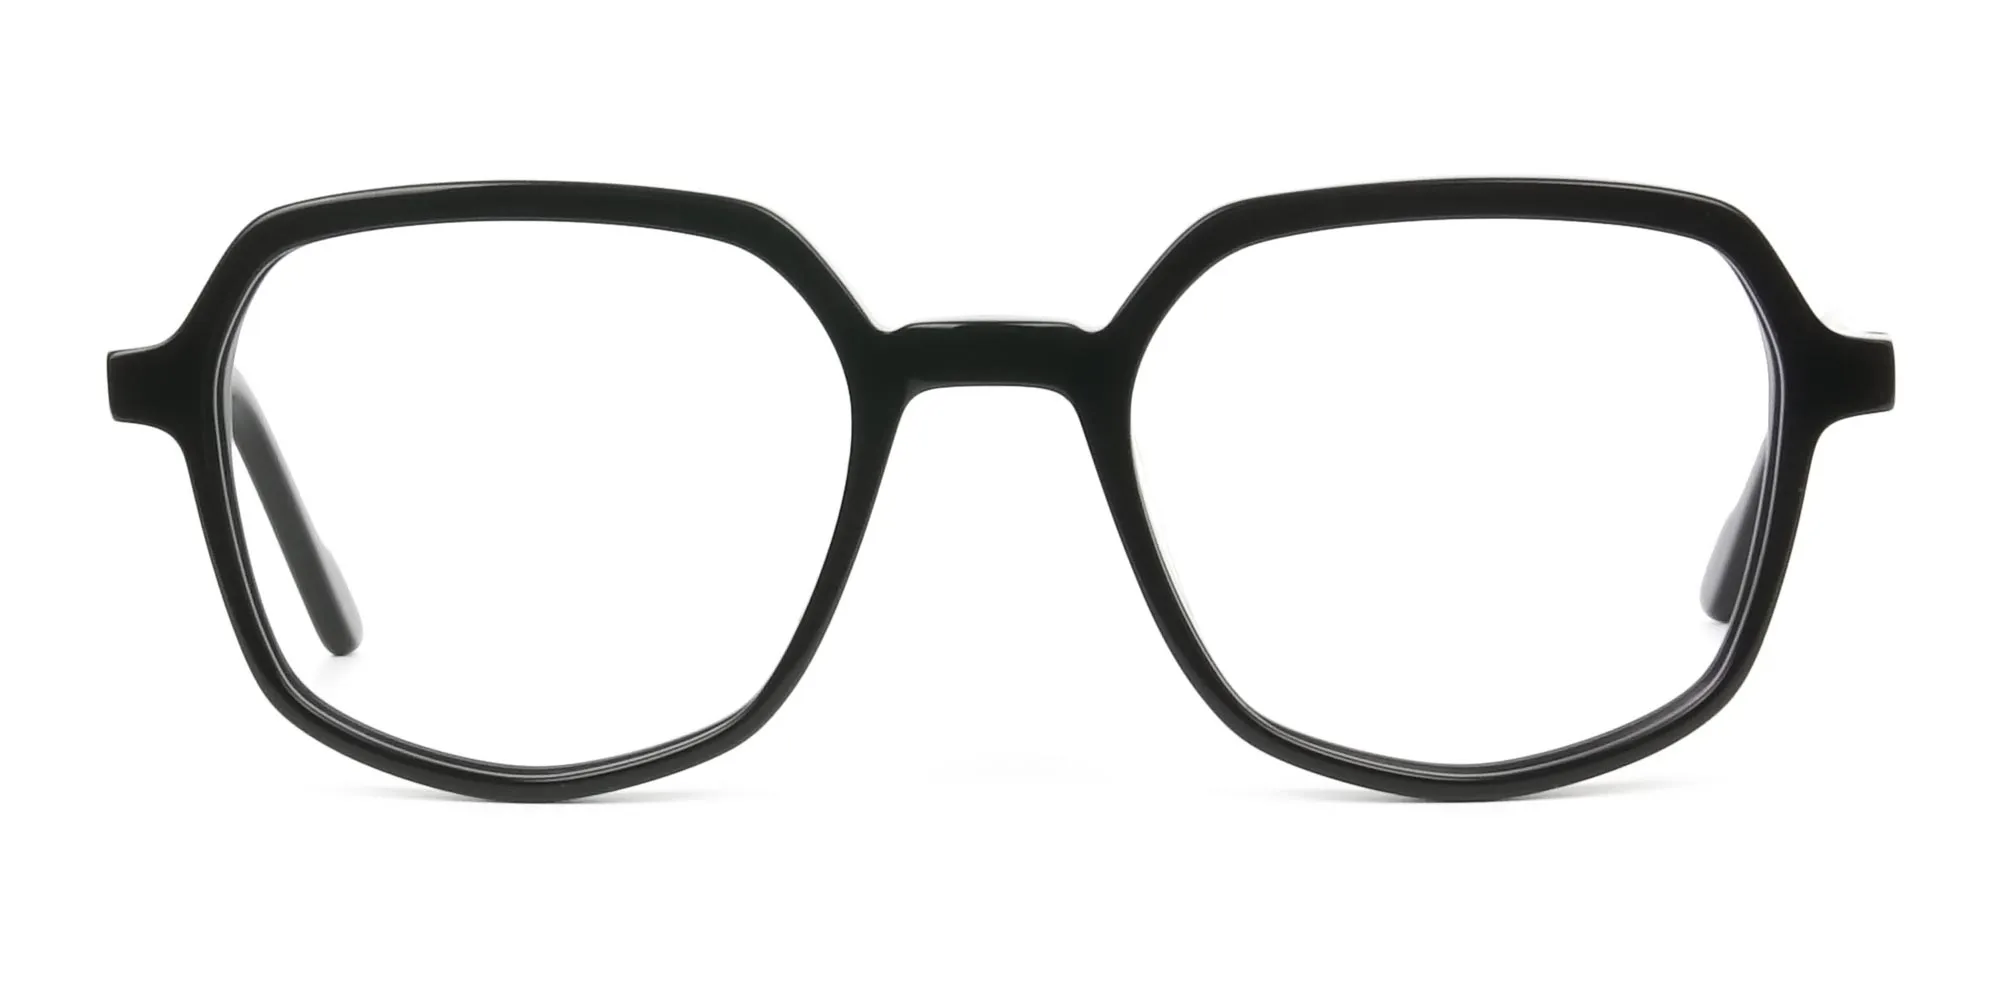 Geometric Frame Glasses in Black - 2